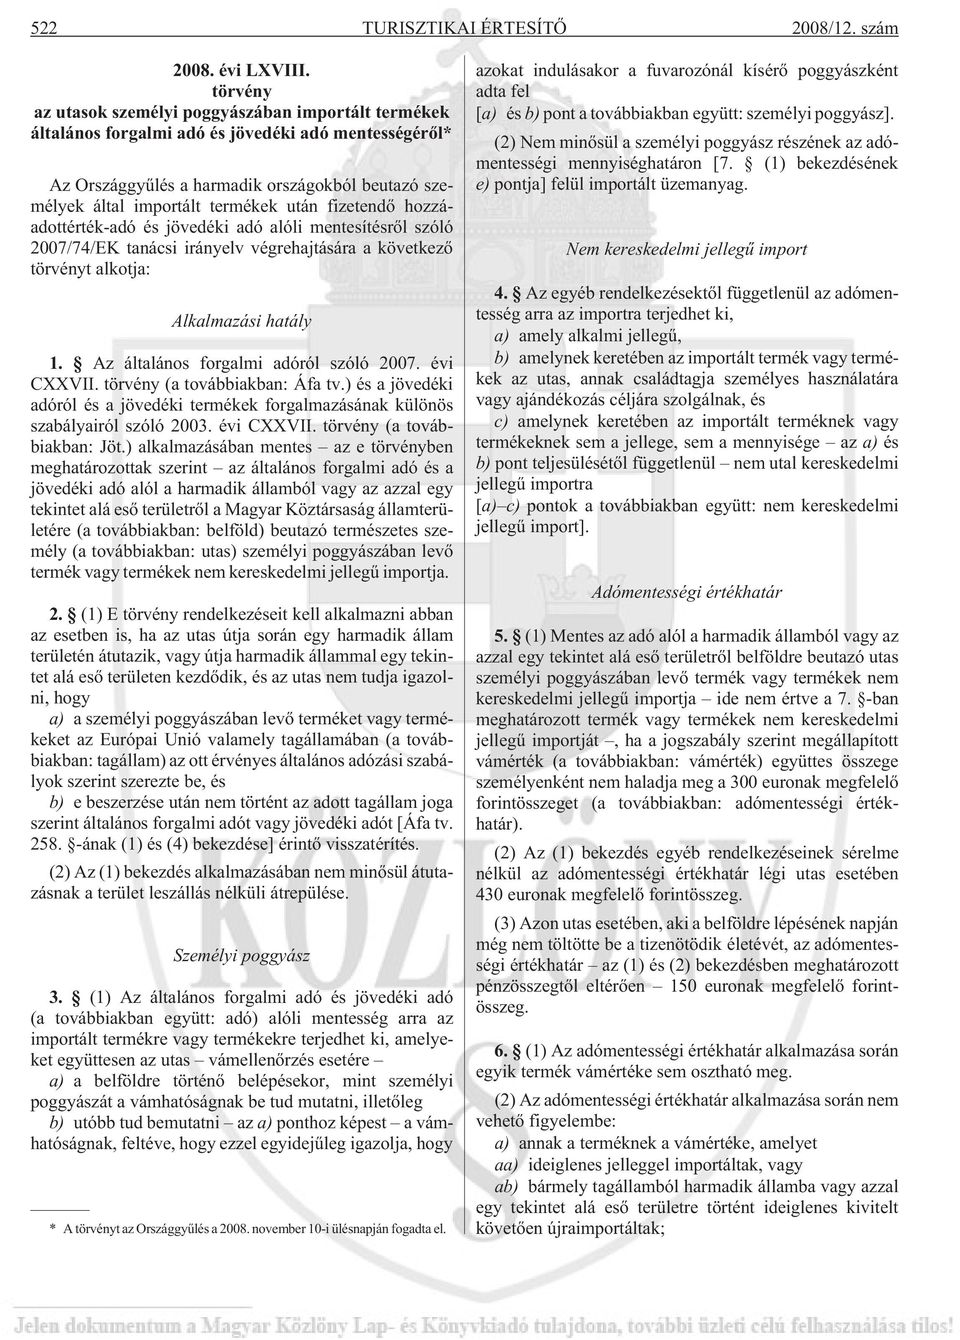 fizetendõ hozzáadottérték-adó és jövedéki adó alóli mentesítésrõl szóló 2007/74/EK tanácsi irányelv végrehajtására a következõ törvényt alkotja: Alkalmazási hatály 1.